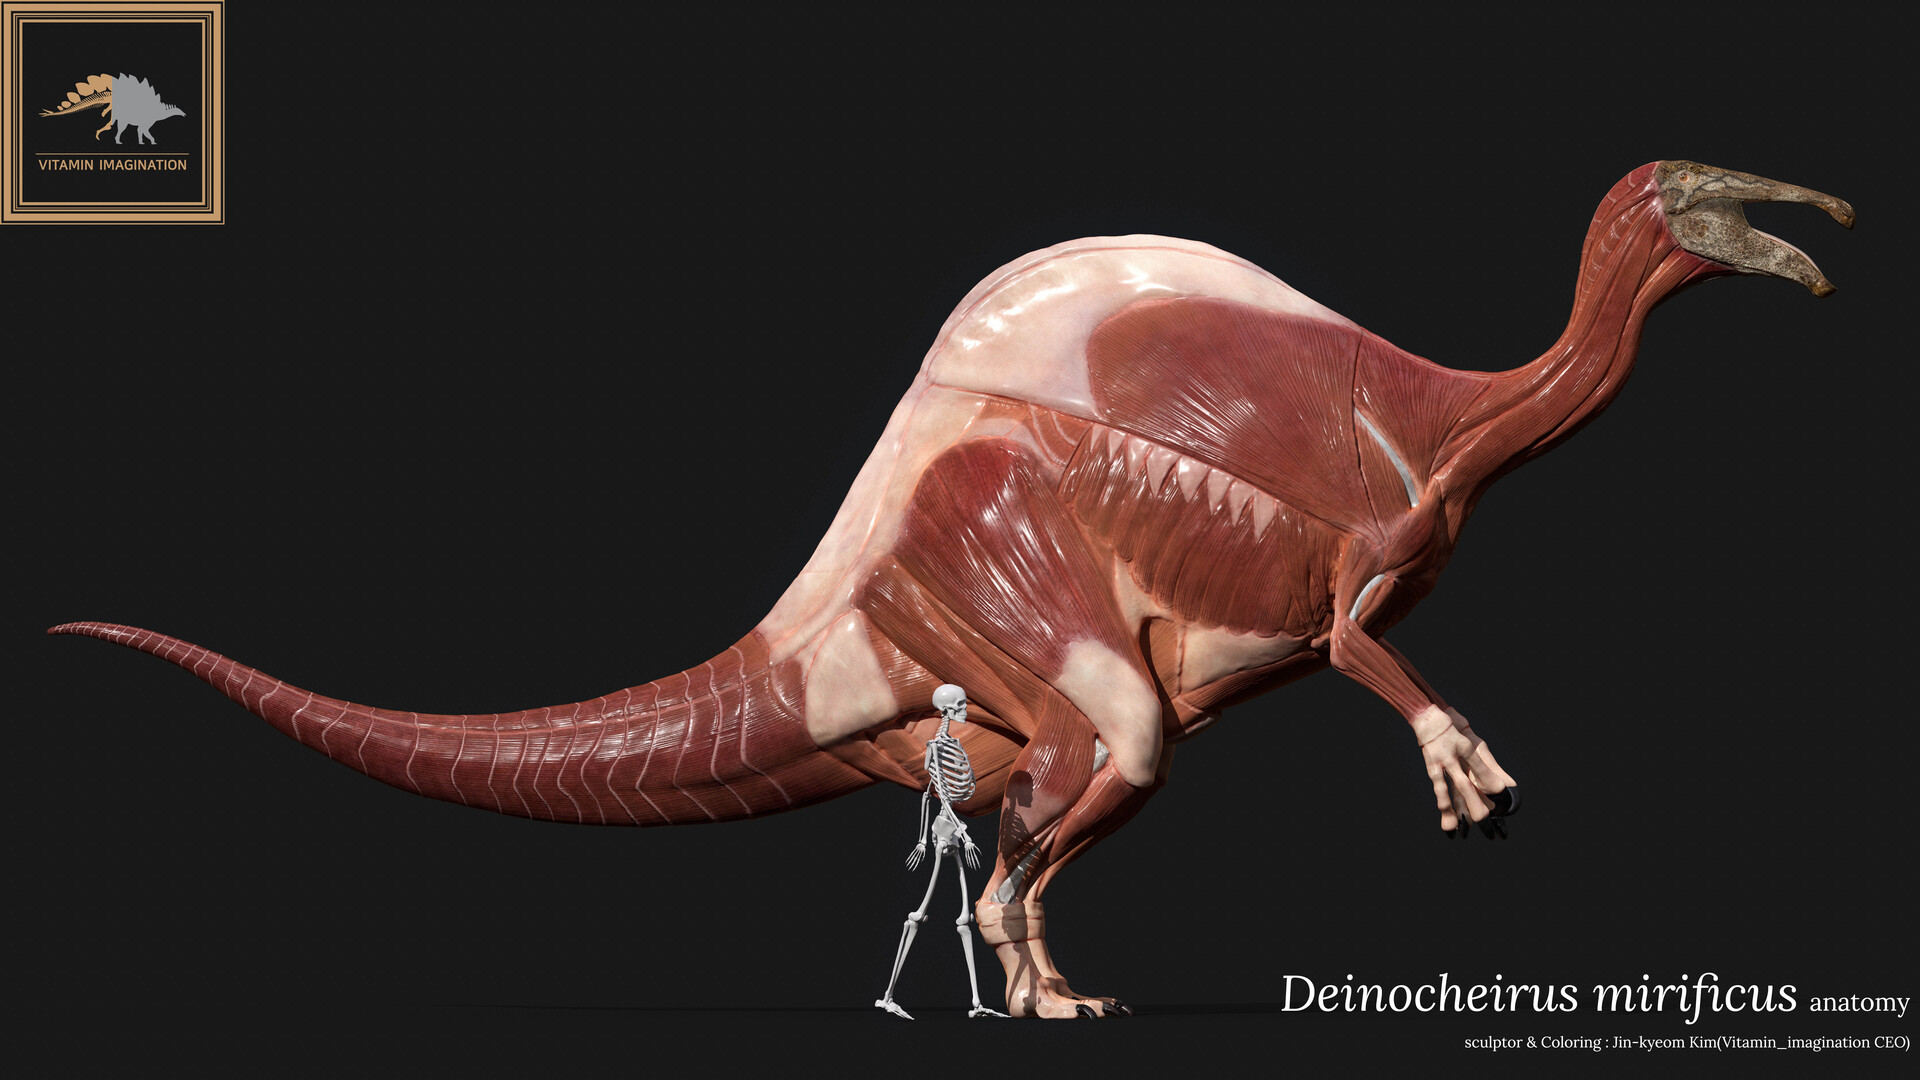 ArtStation - Deinocheirus mirificus anatomy